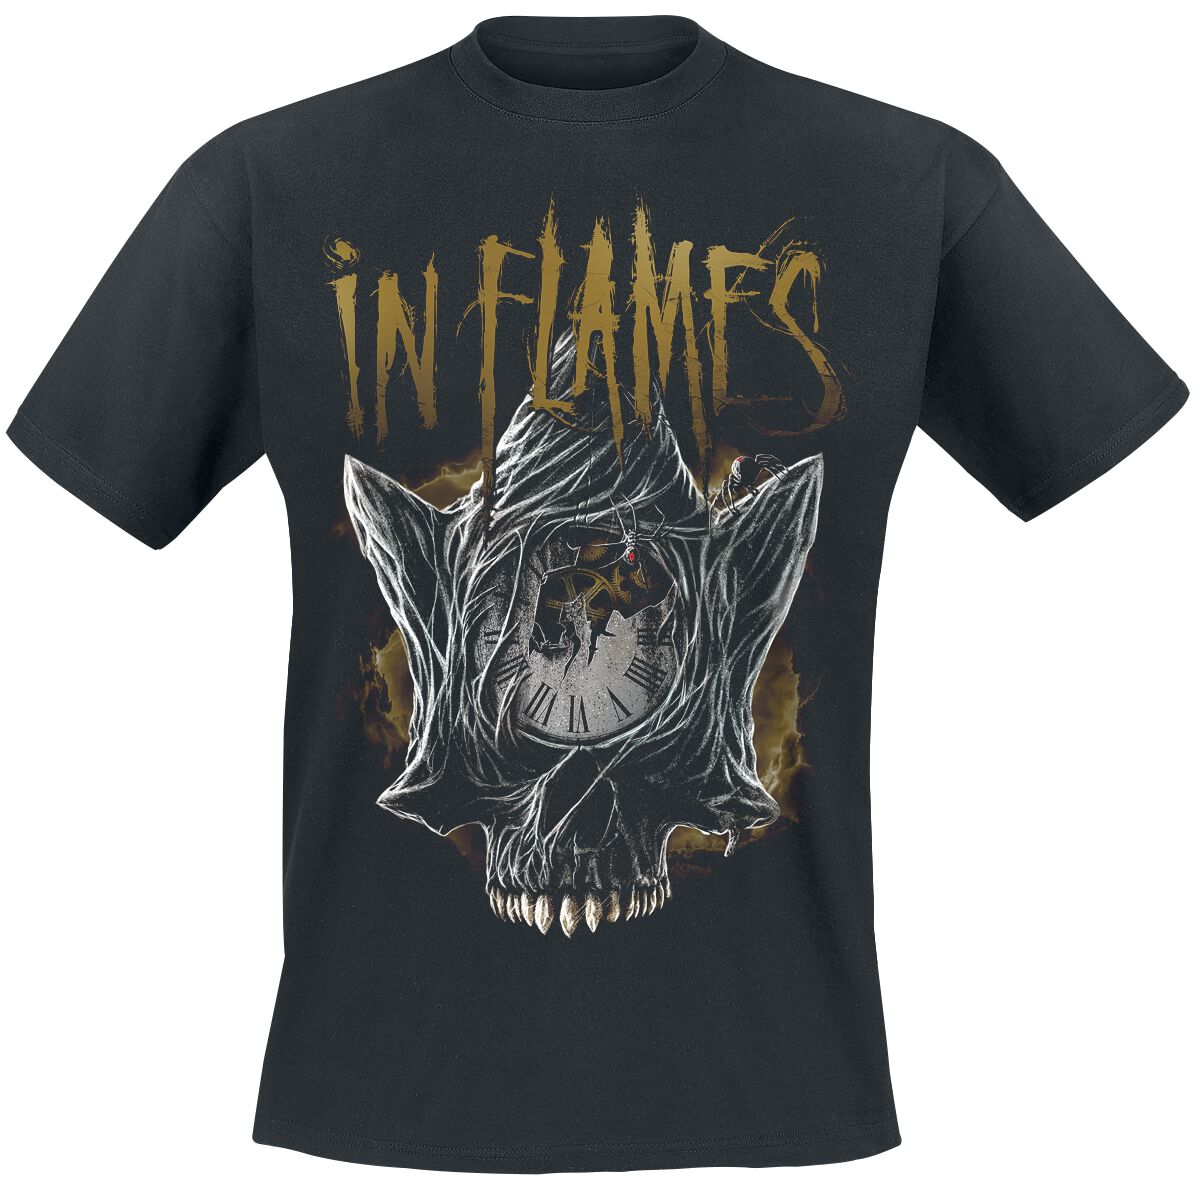 In Flames T-Shirt - Foregone Skull - S bis 3XL - für Männer - Größe L - schwarz  - Lizenziertes Merchandise!